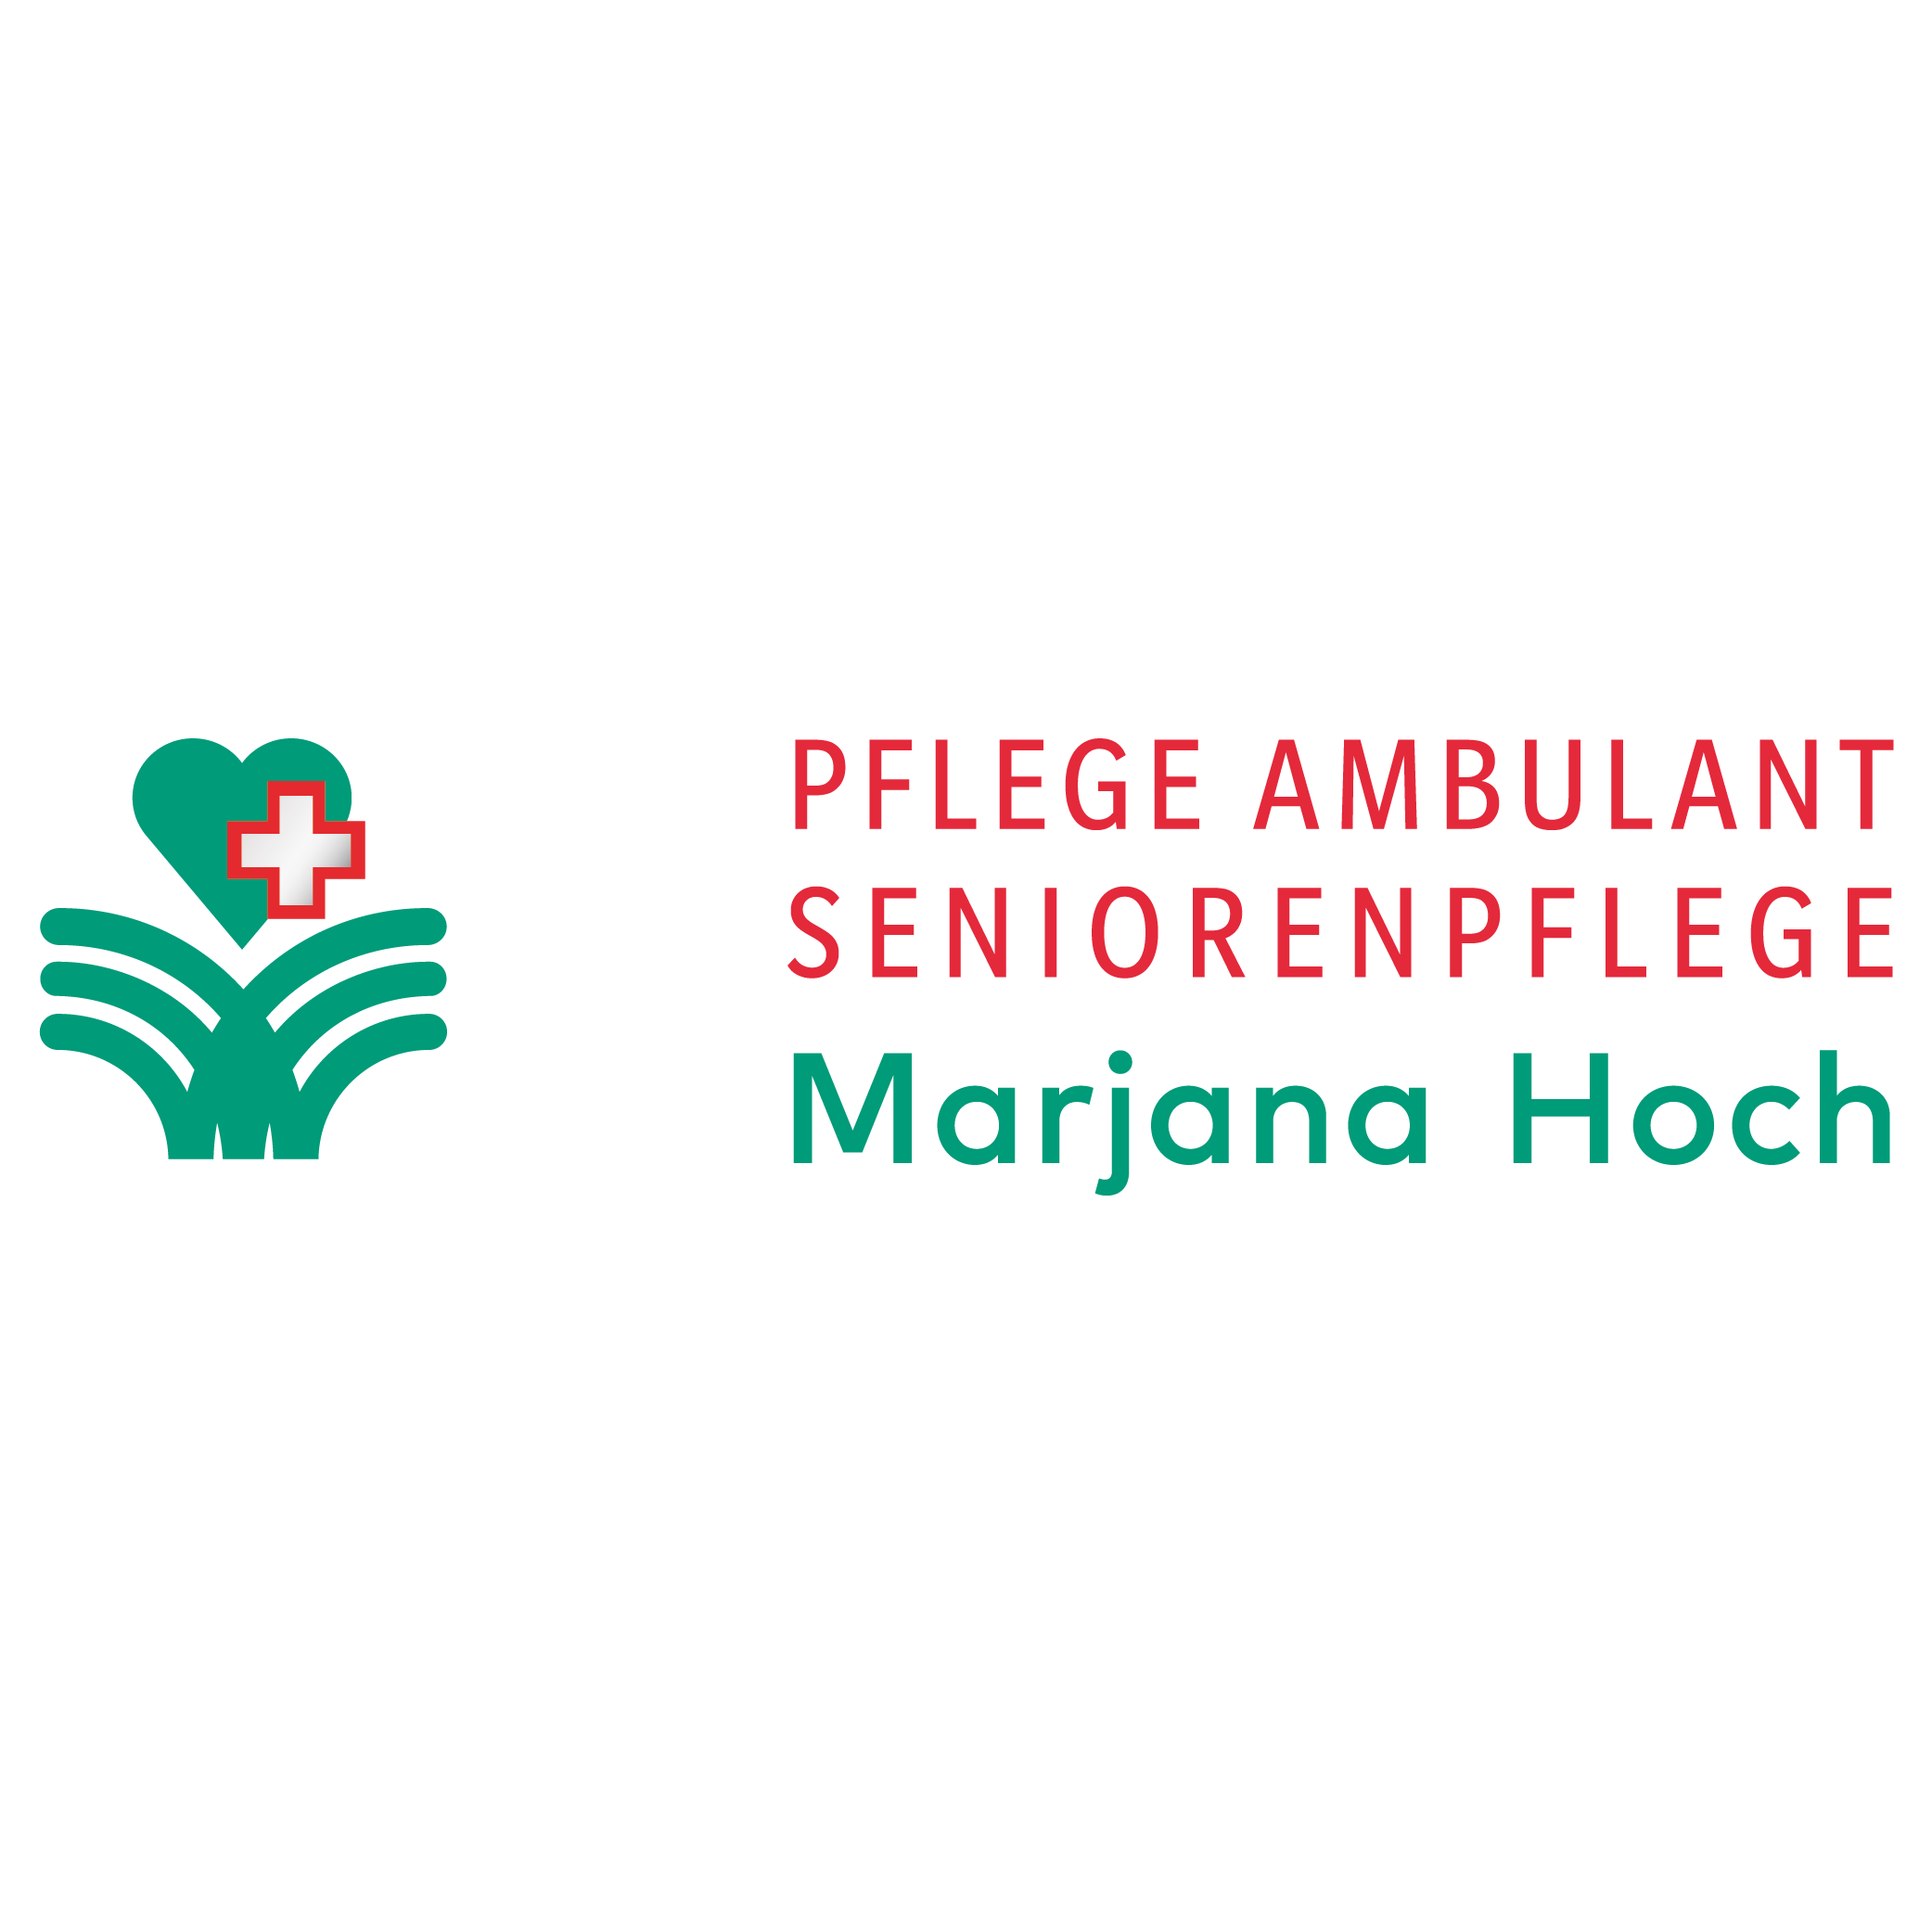 Marjana Hoch-Hotz Pflege Ambulant Seniorenpflege in Dresden - Logo